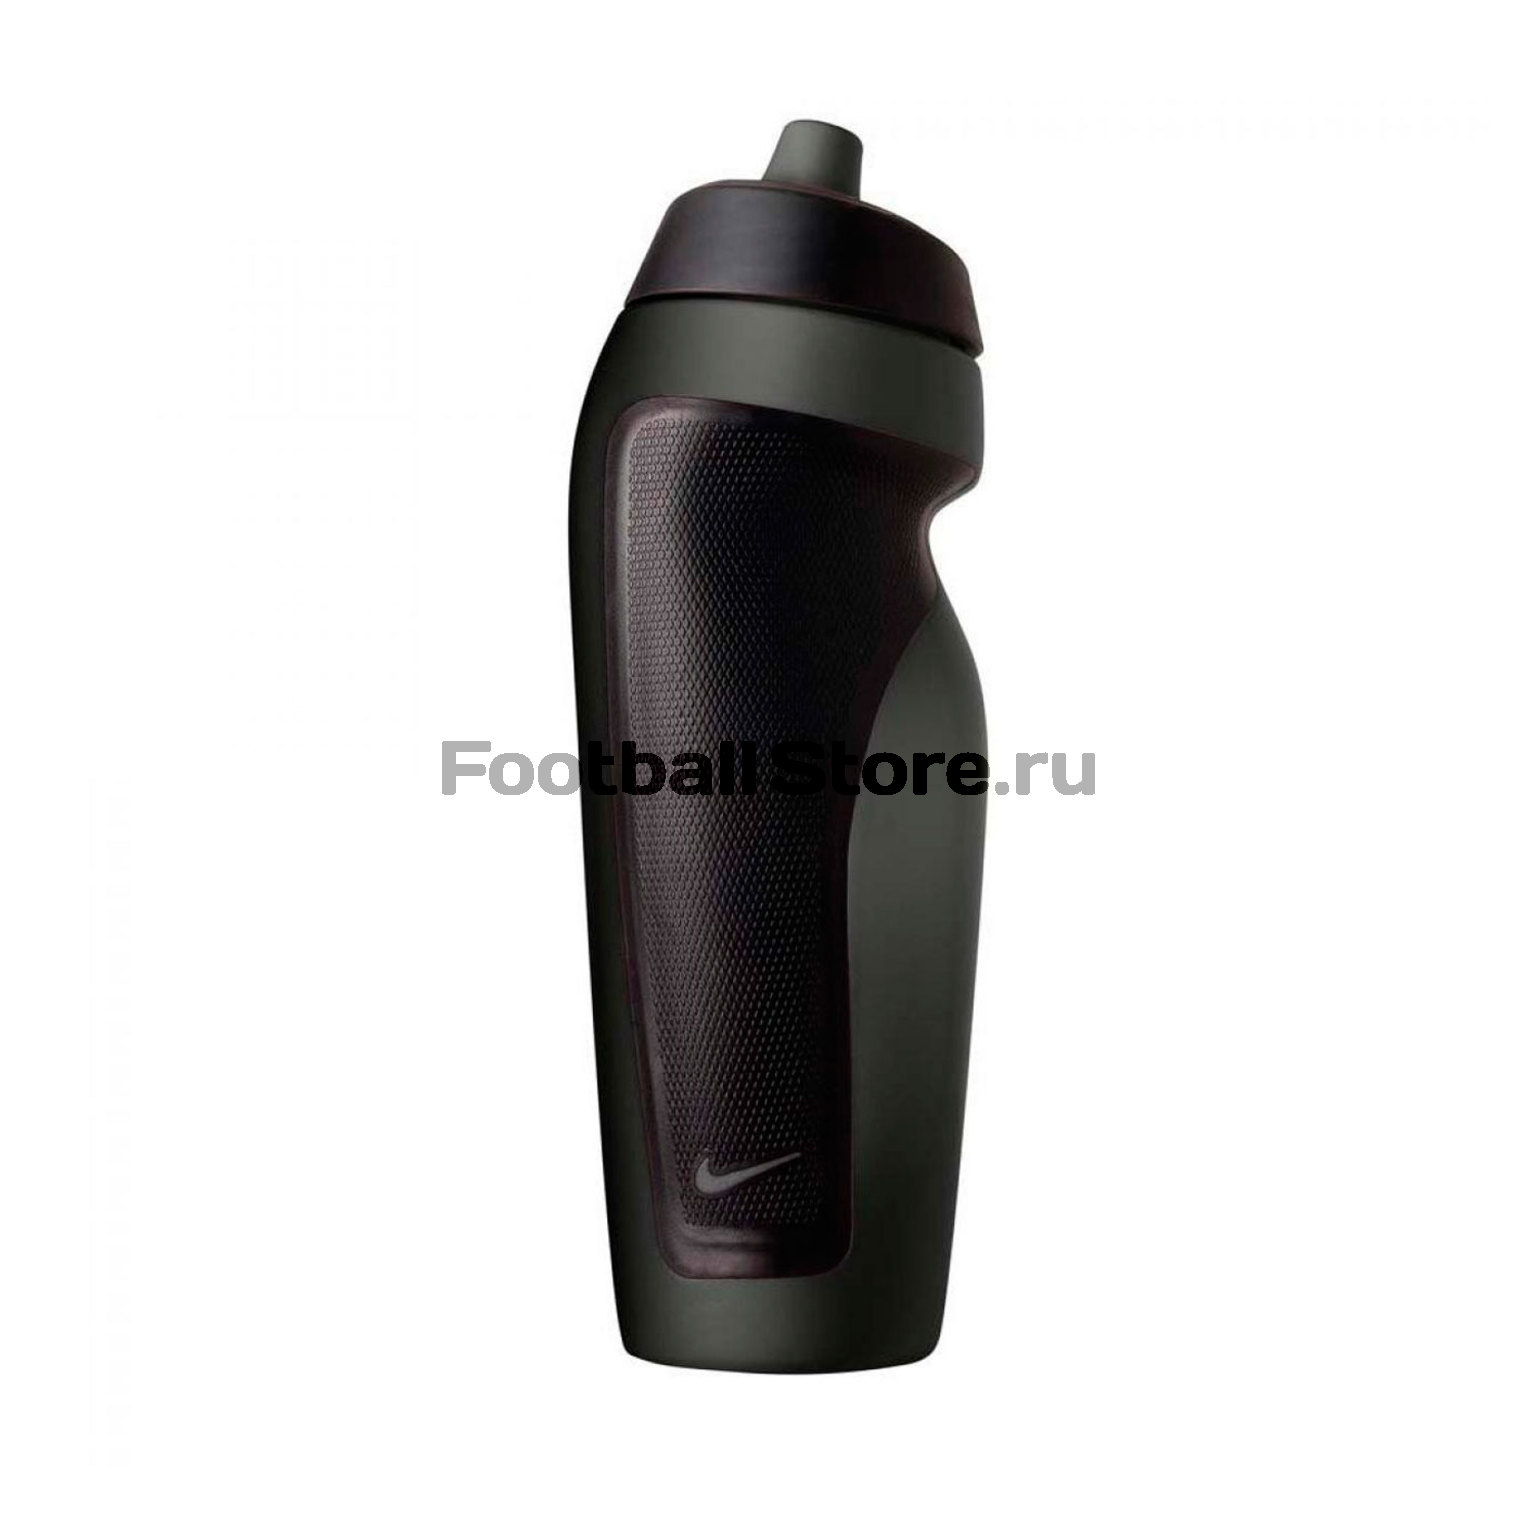 Бутылка для воды Nike Sport Water Bottle N.OB.11.030.OS